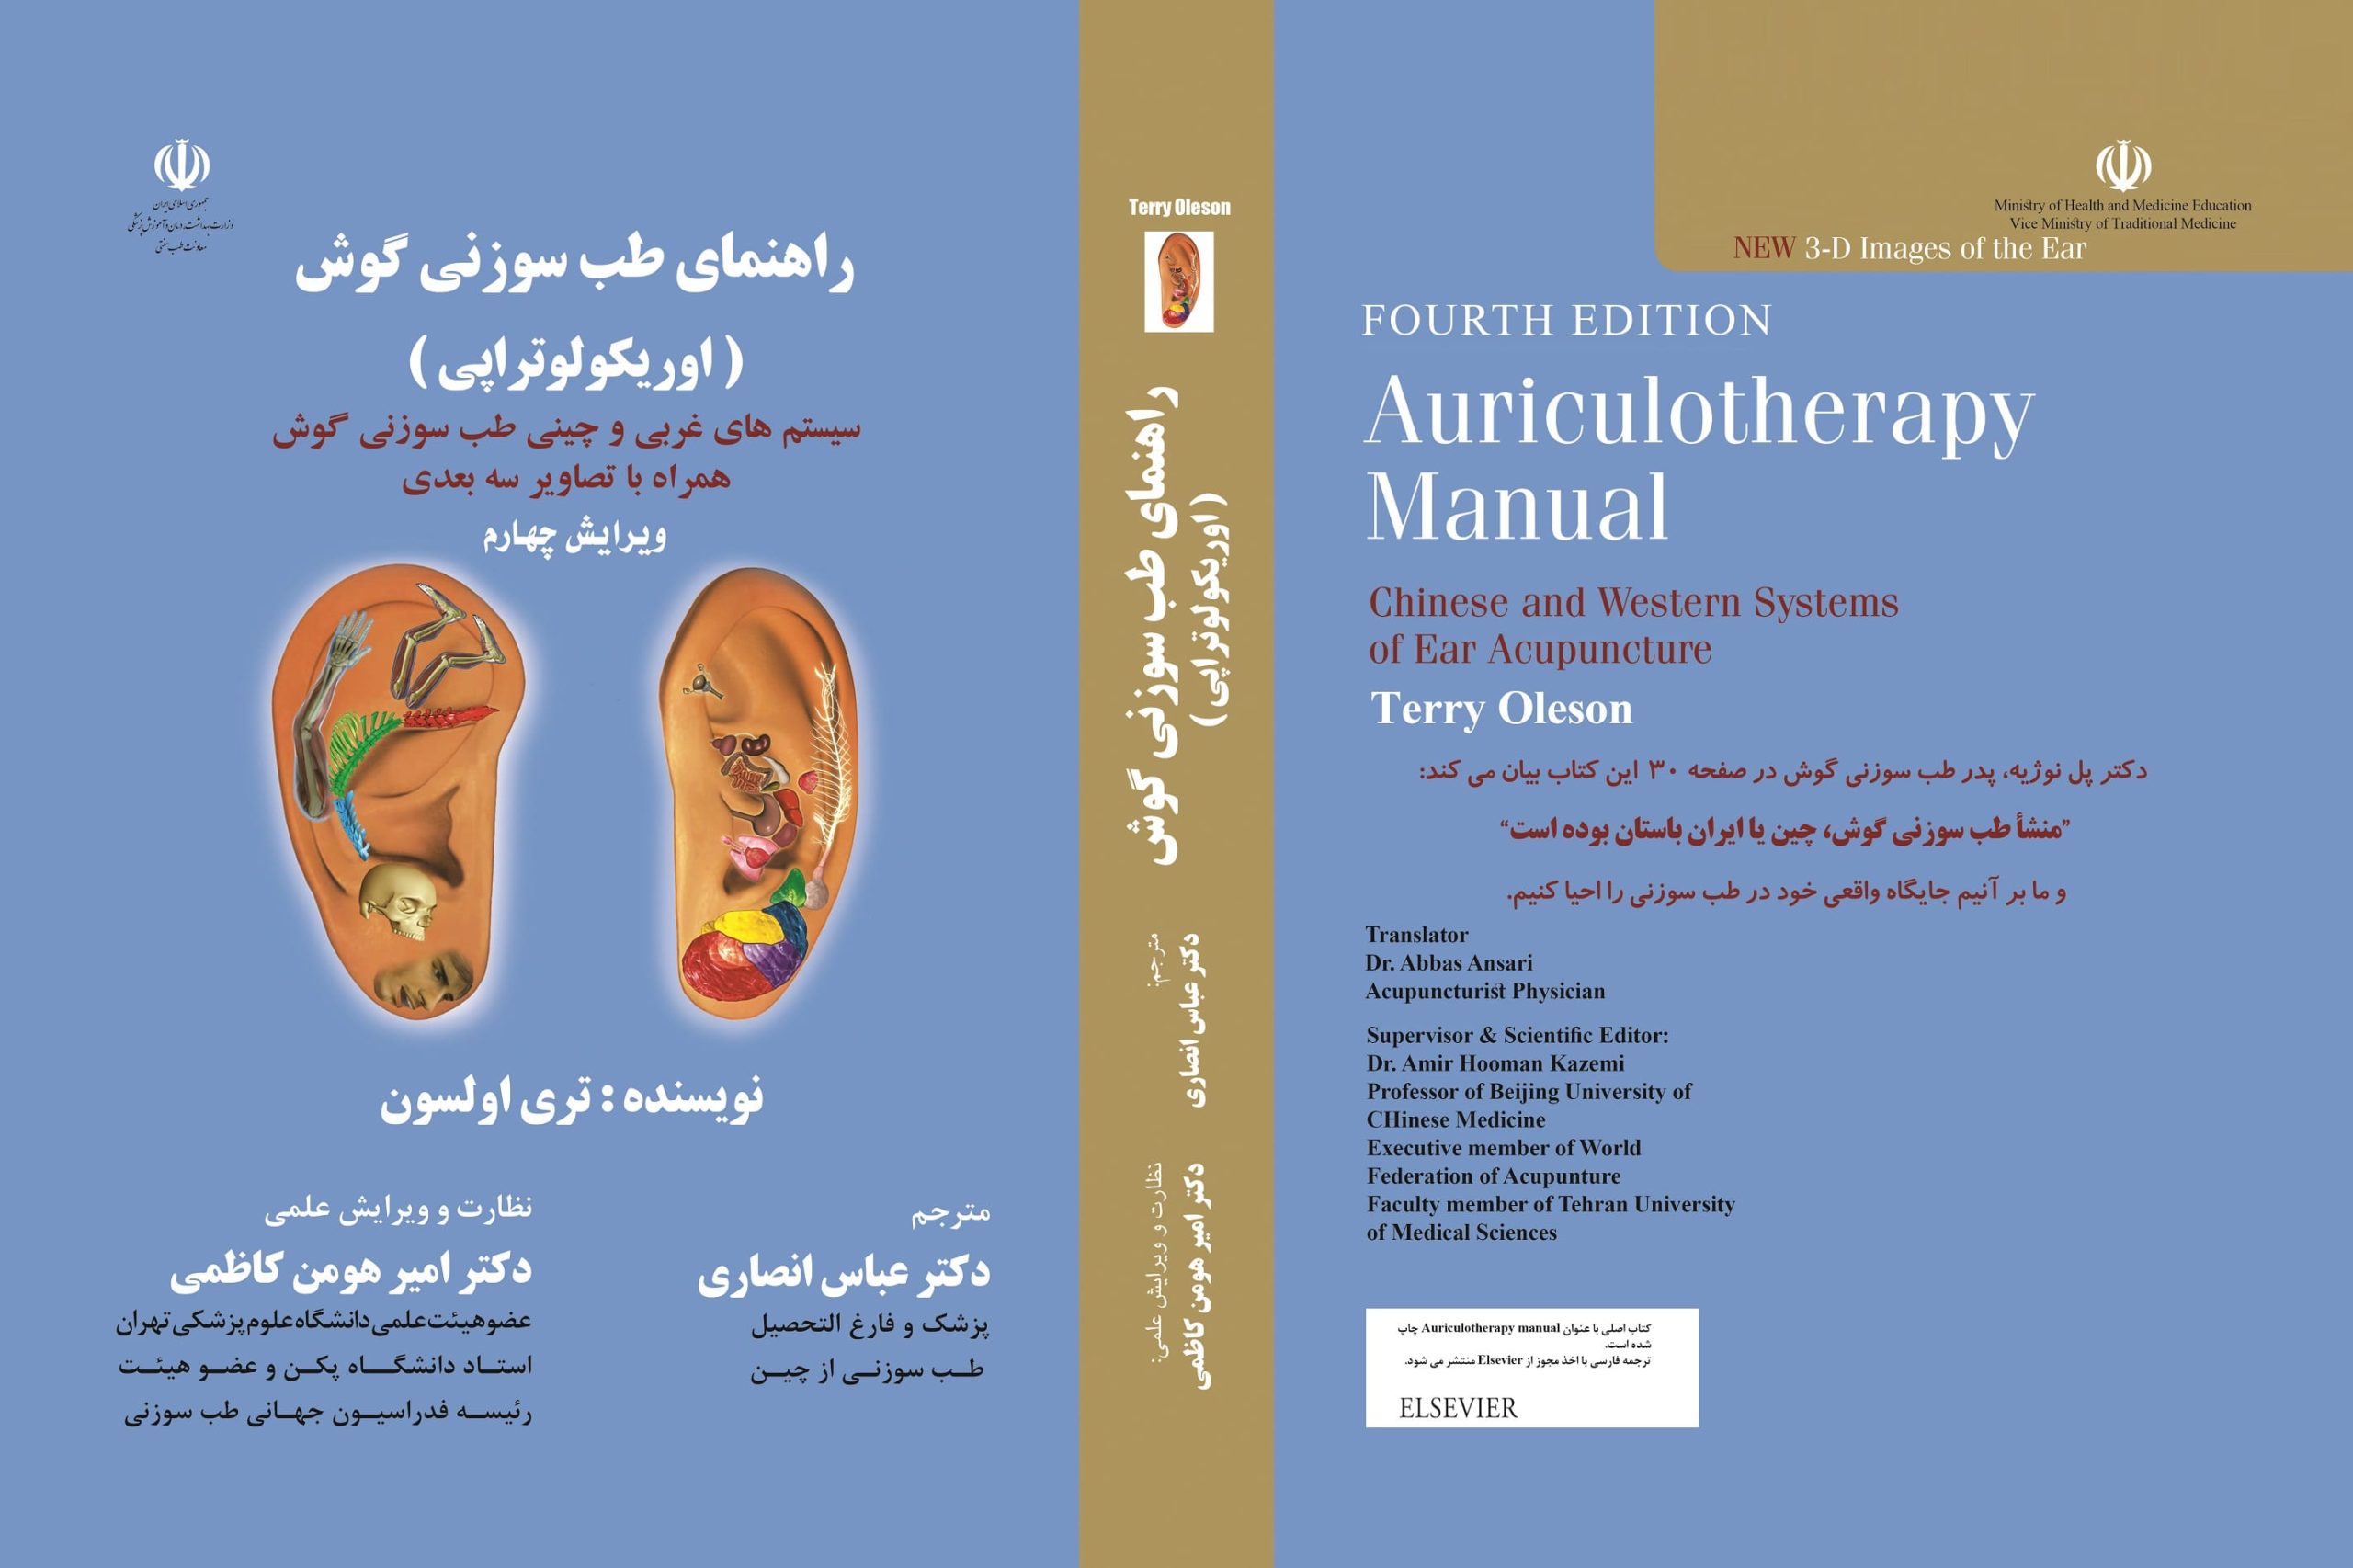 کتاب راهنمای طب سوزنی گوش-کتاب اوریکولوتراپی-مترجم: دکتر عباس انصاری